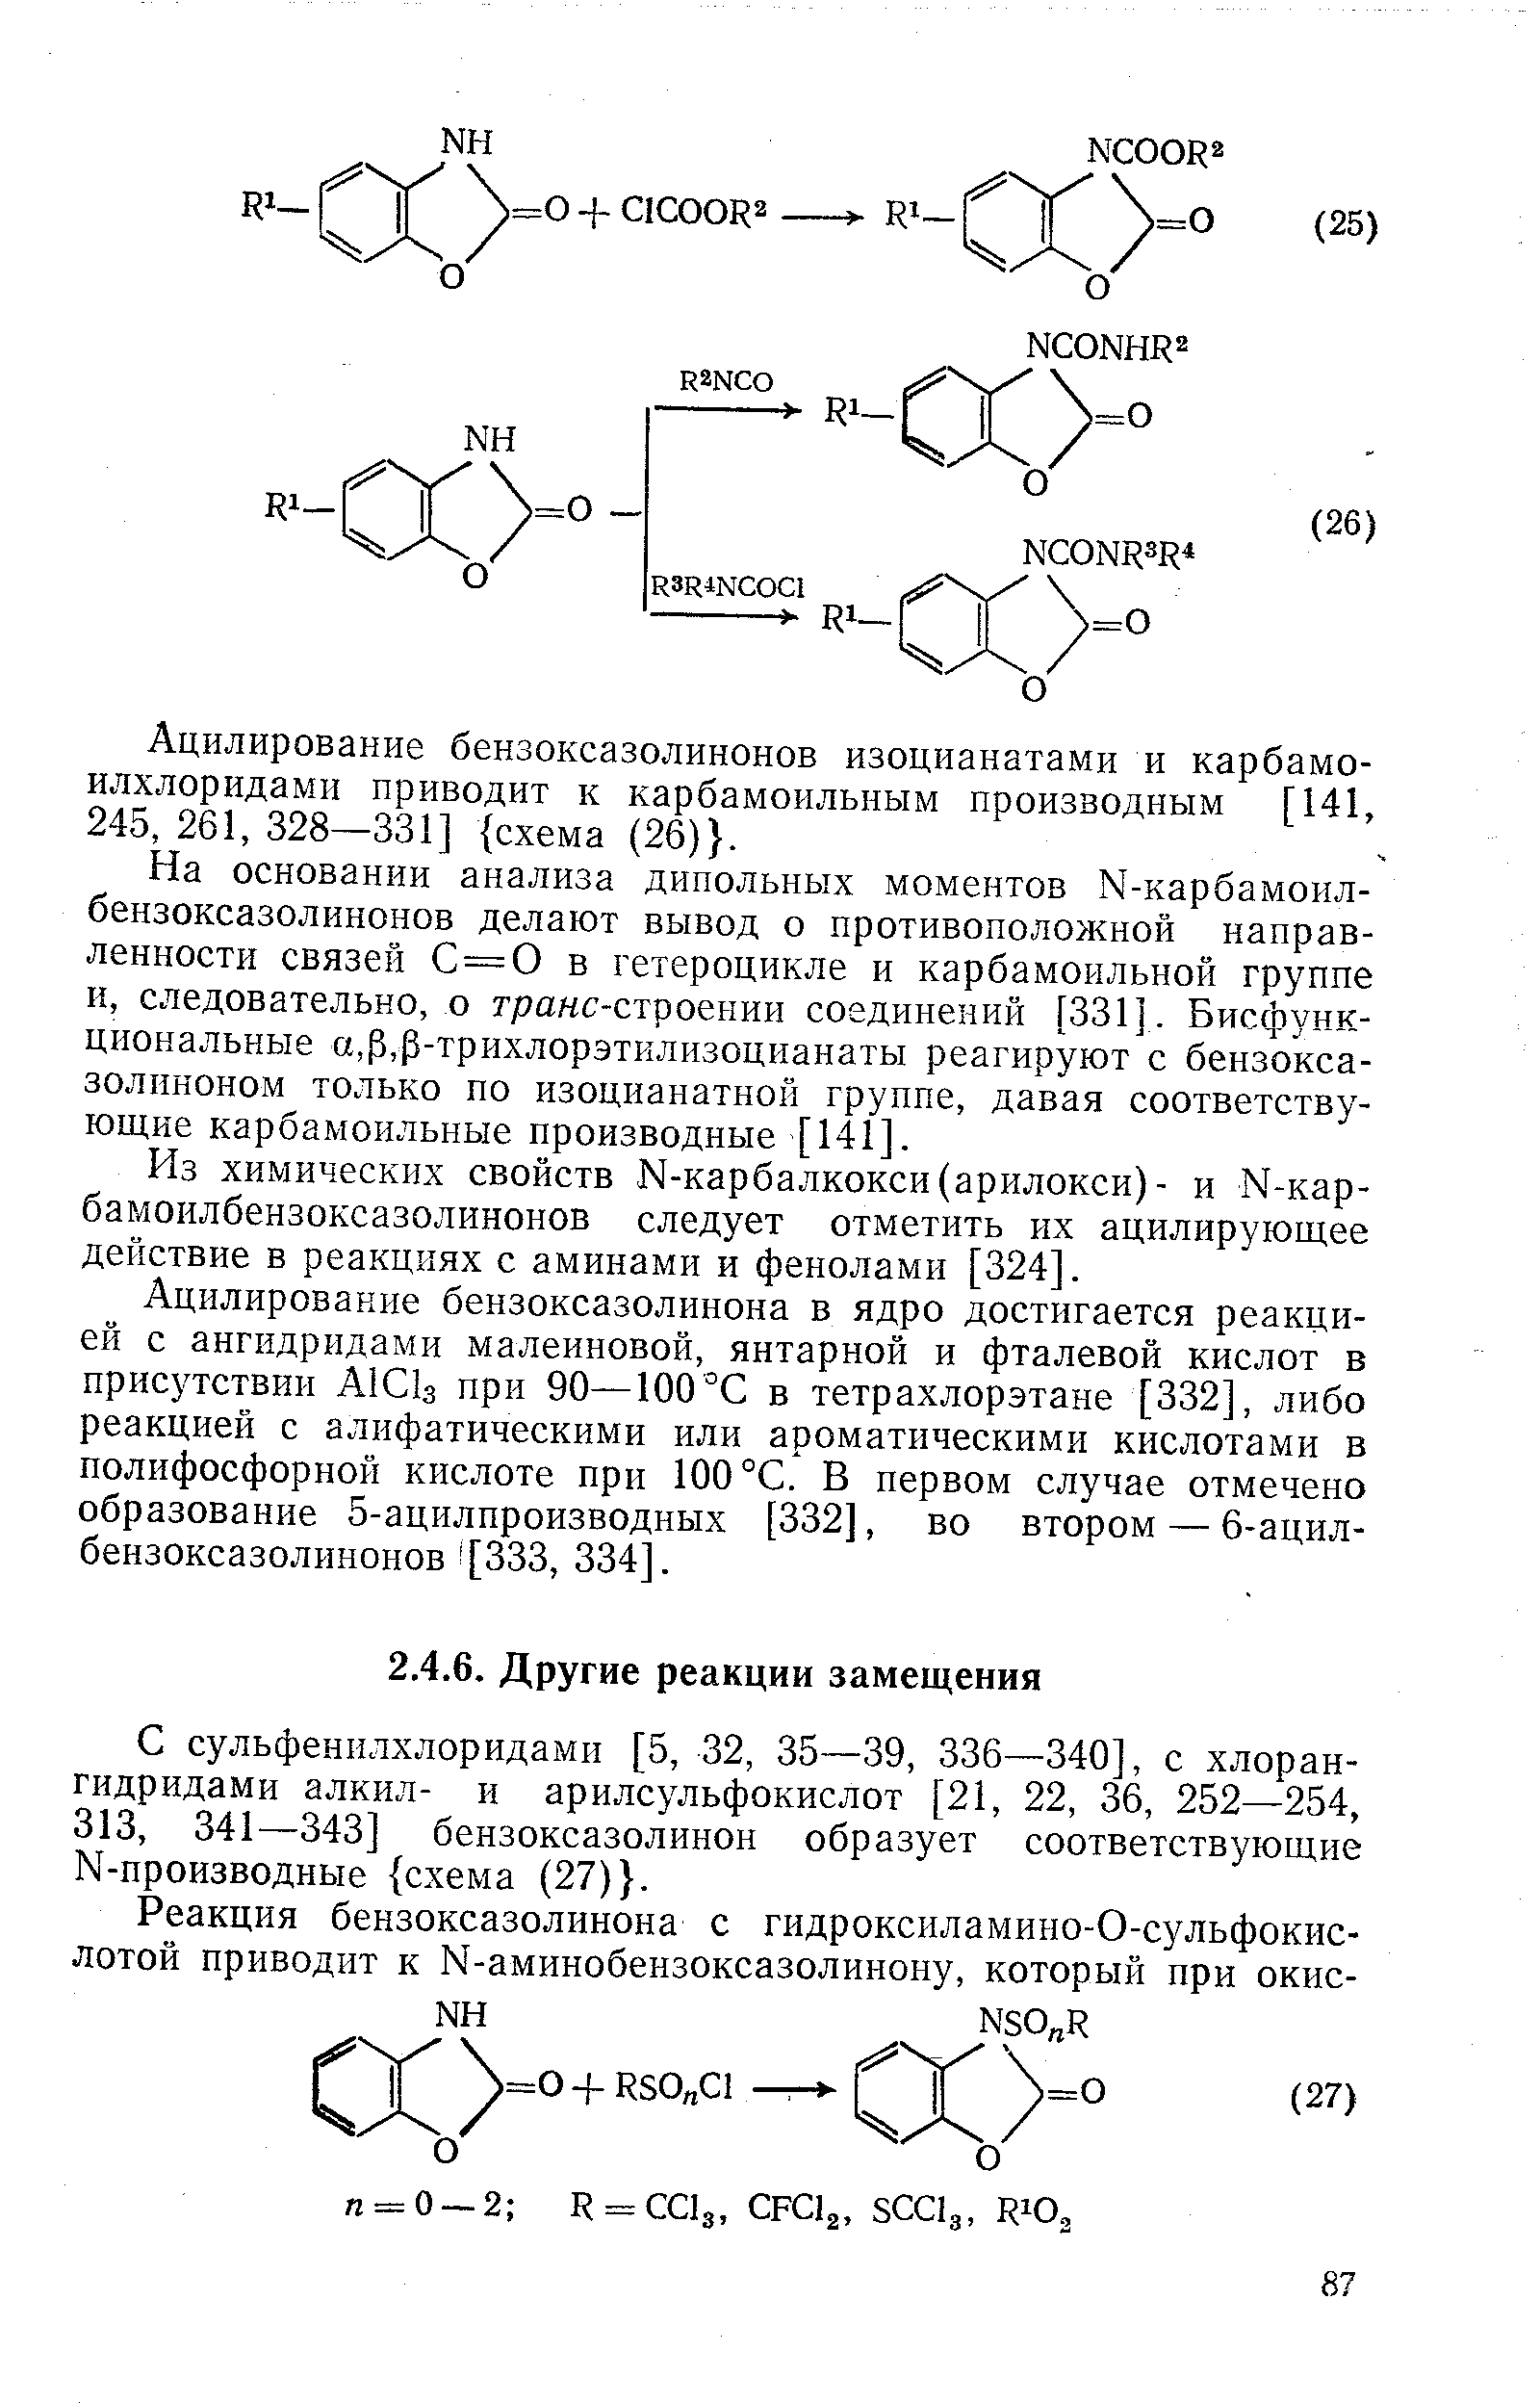 С сульфенилхлоридами [5, 32, 35—39, 336—340], с хлорангидридами алкил- и арилсульфокислот [21, 22, 36, 252—254, 313, 341—343] бензоксазолинон образует соответствующие N-пpoизвoдныe схема (27) .